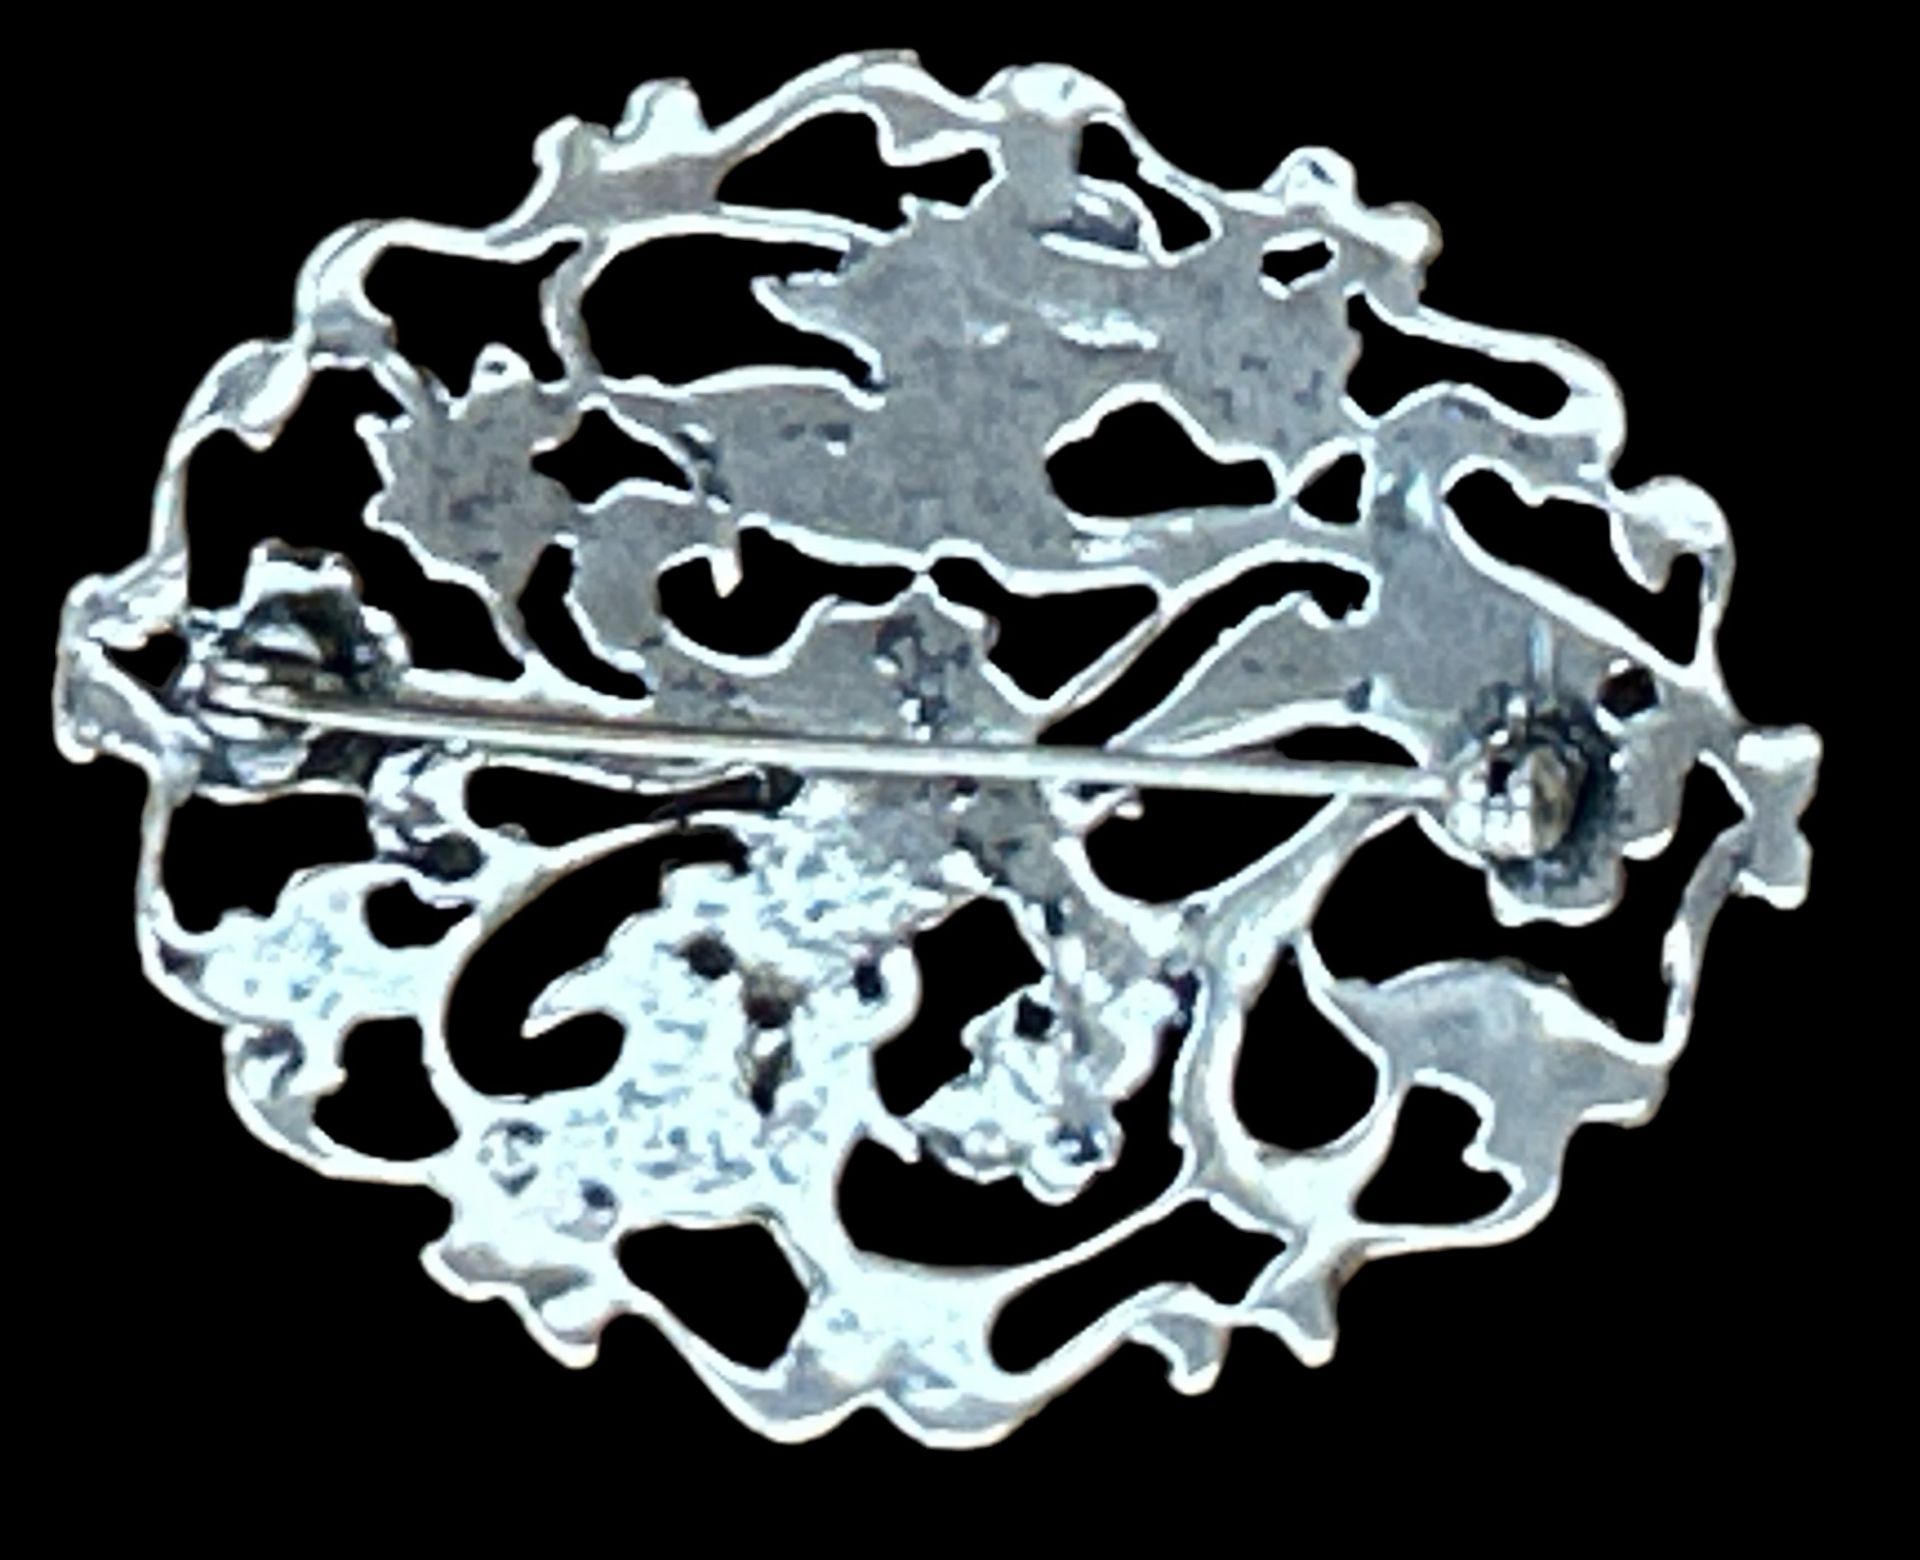 gr. Silber-Brosche.floral durchbrochen, undeutliche Punze, 5,5x4 cm, 15,1 gr. - Image 2 of 3